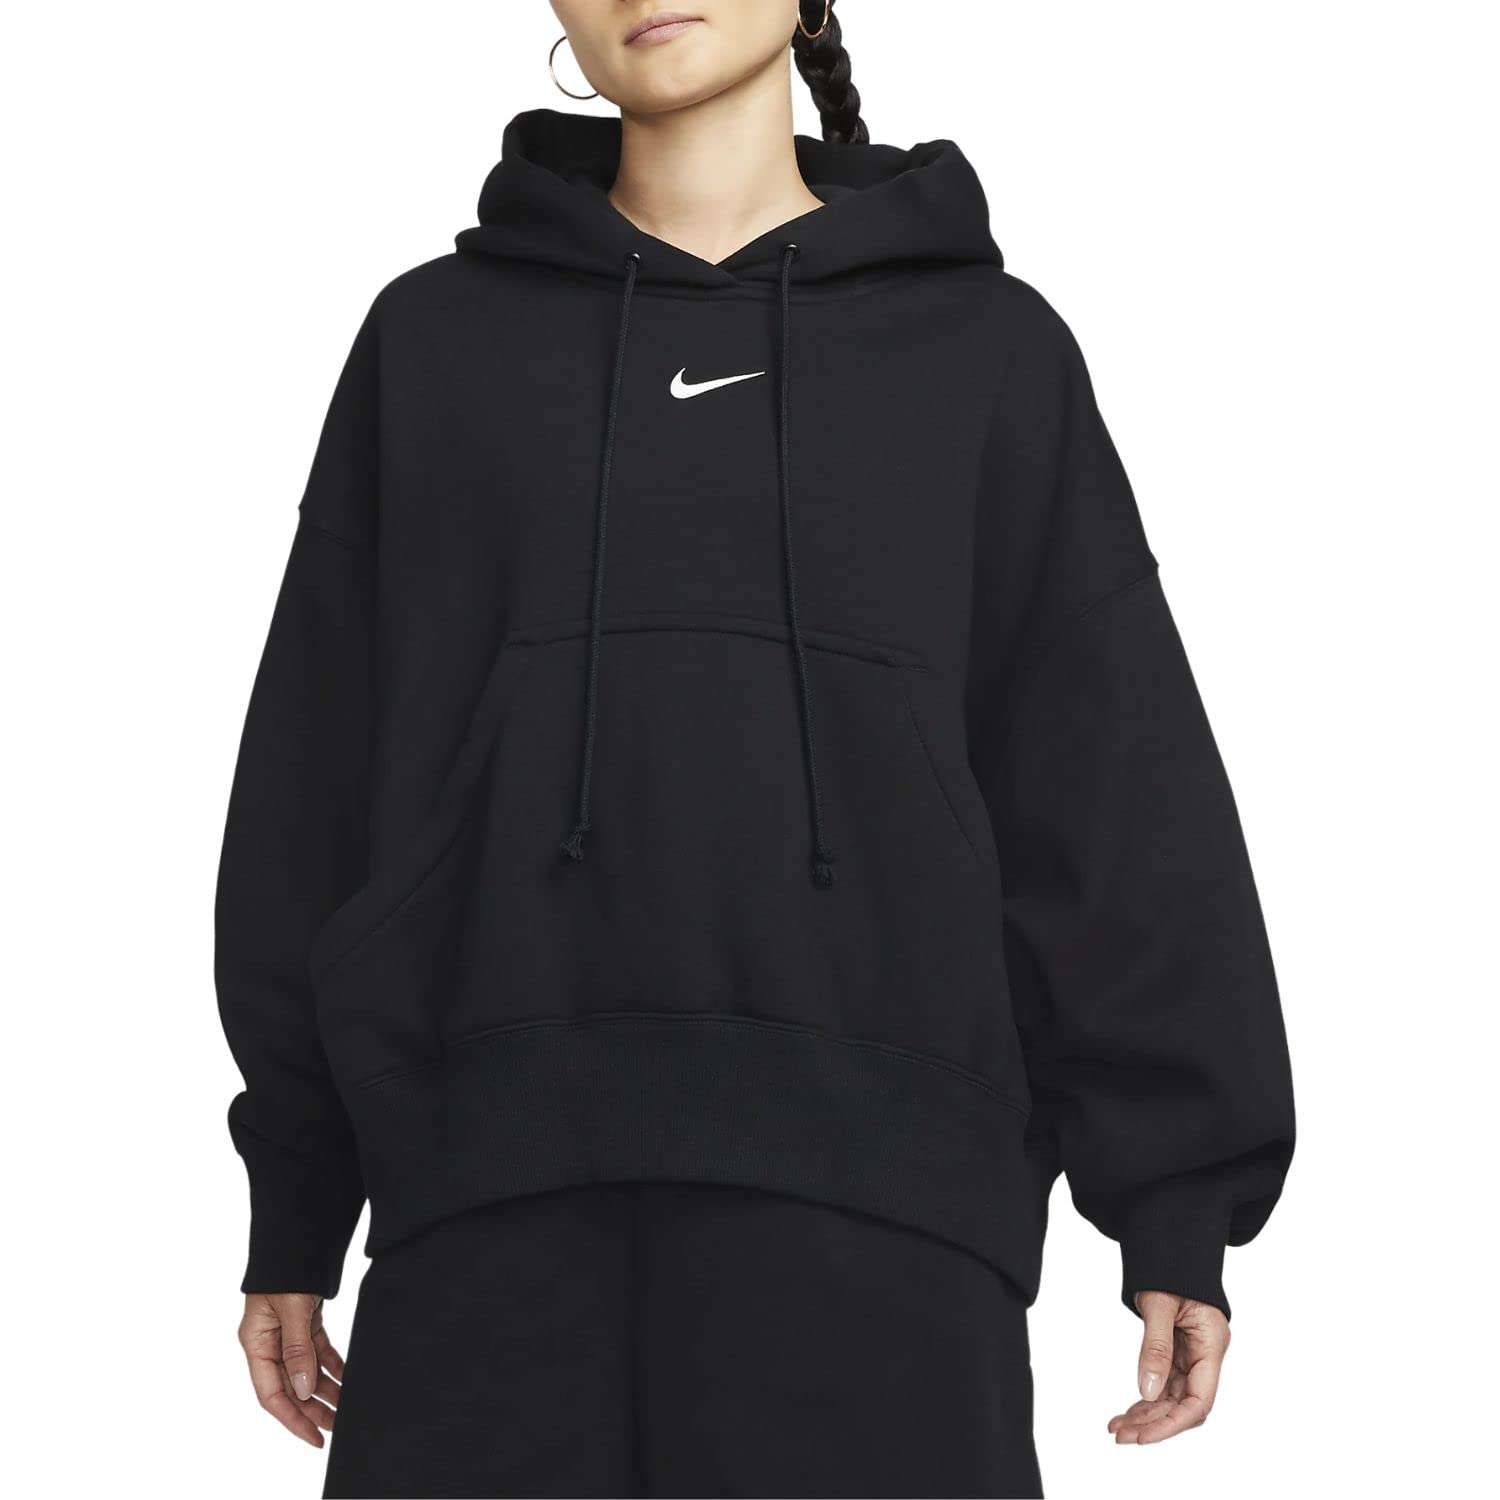 Nike Sportswear Phoenix Fleece Women's Over-Oversized Pullover Hoodie Size - Small Black/Black